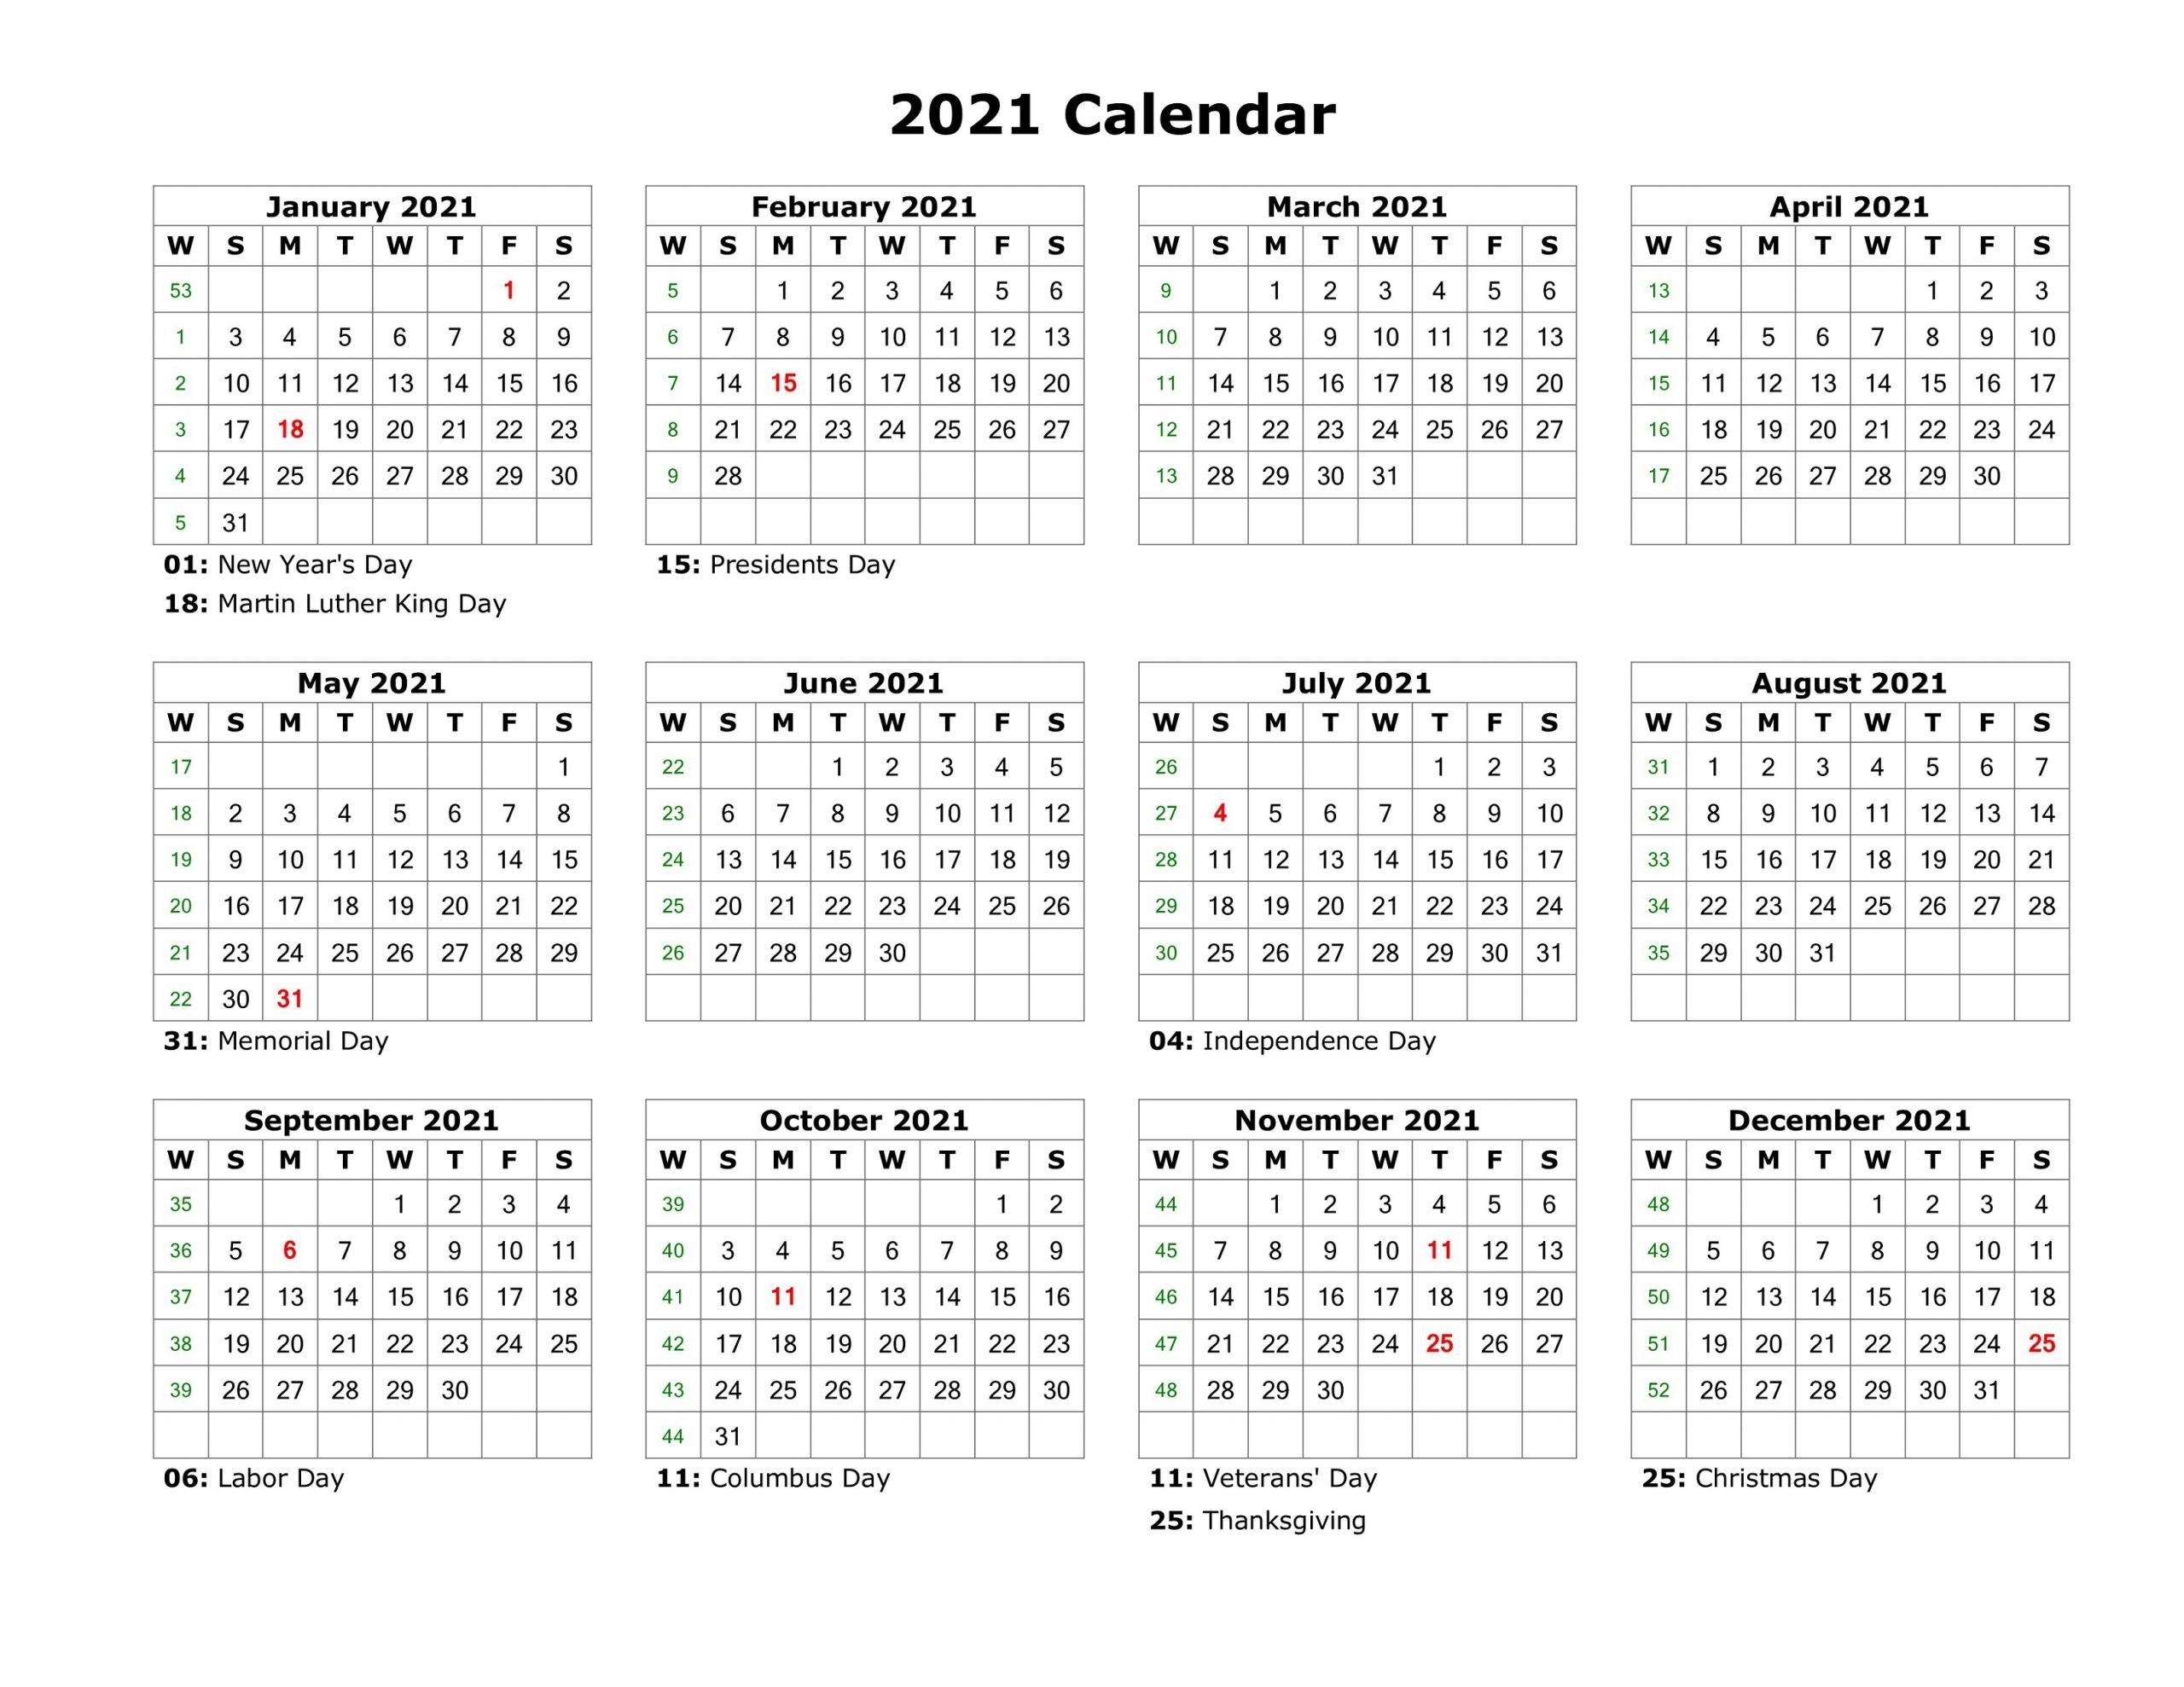 Take 2021 Annual Calendar